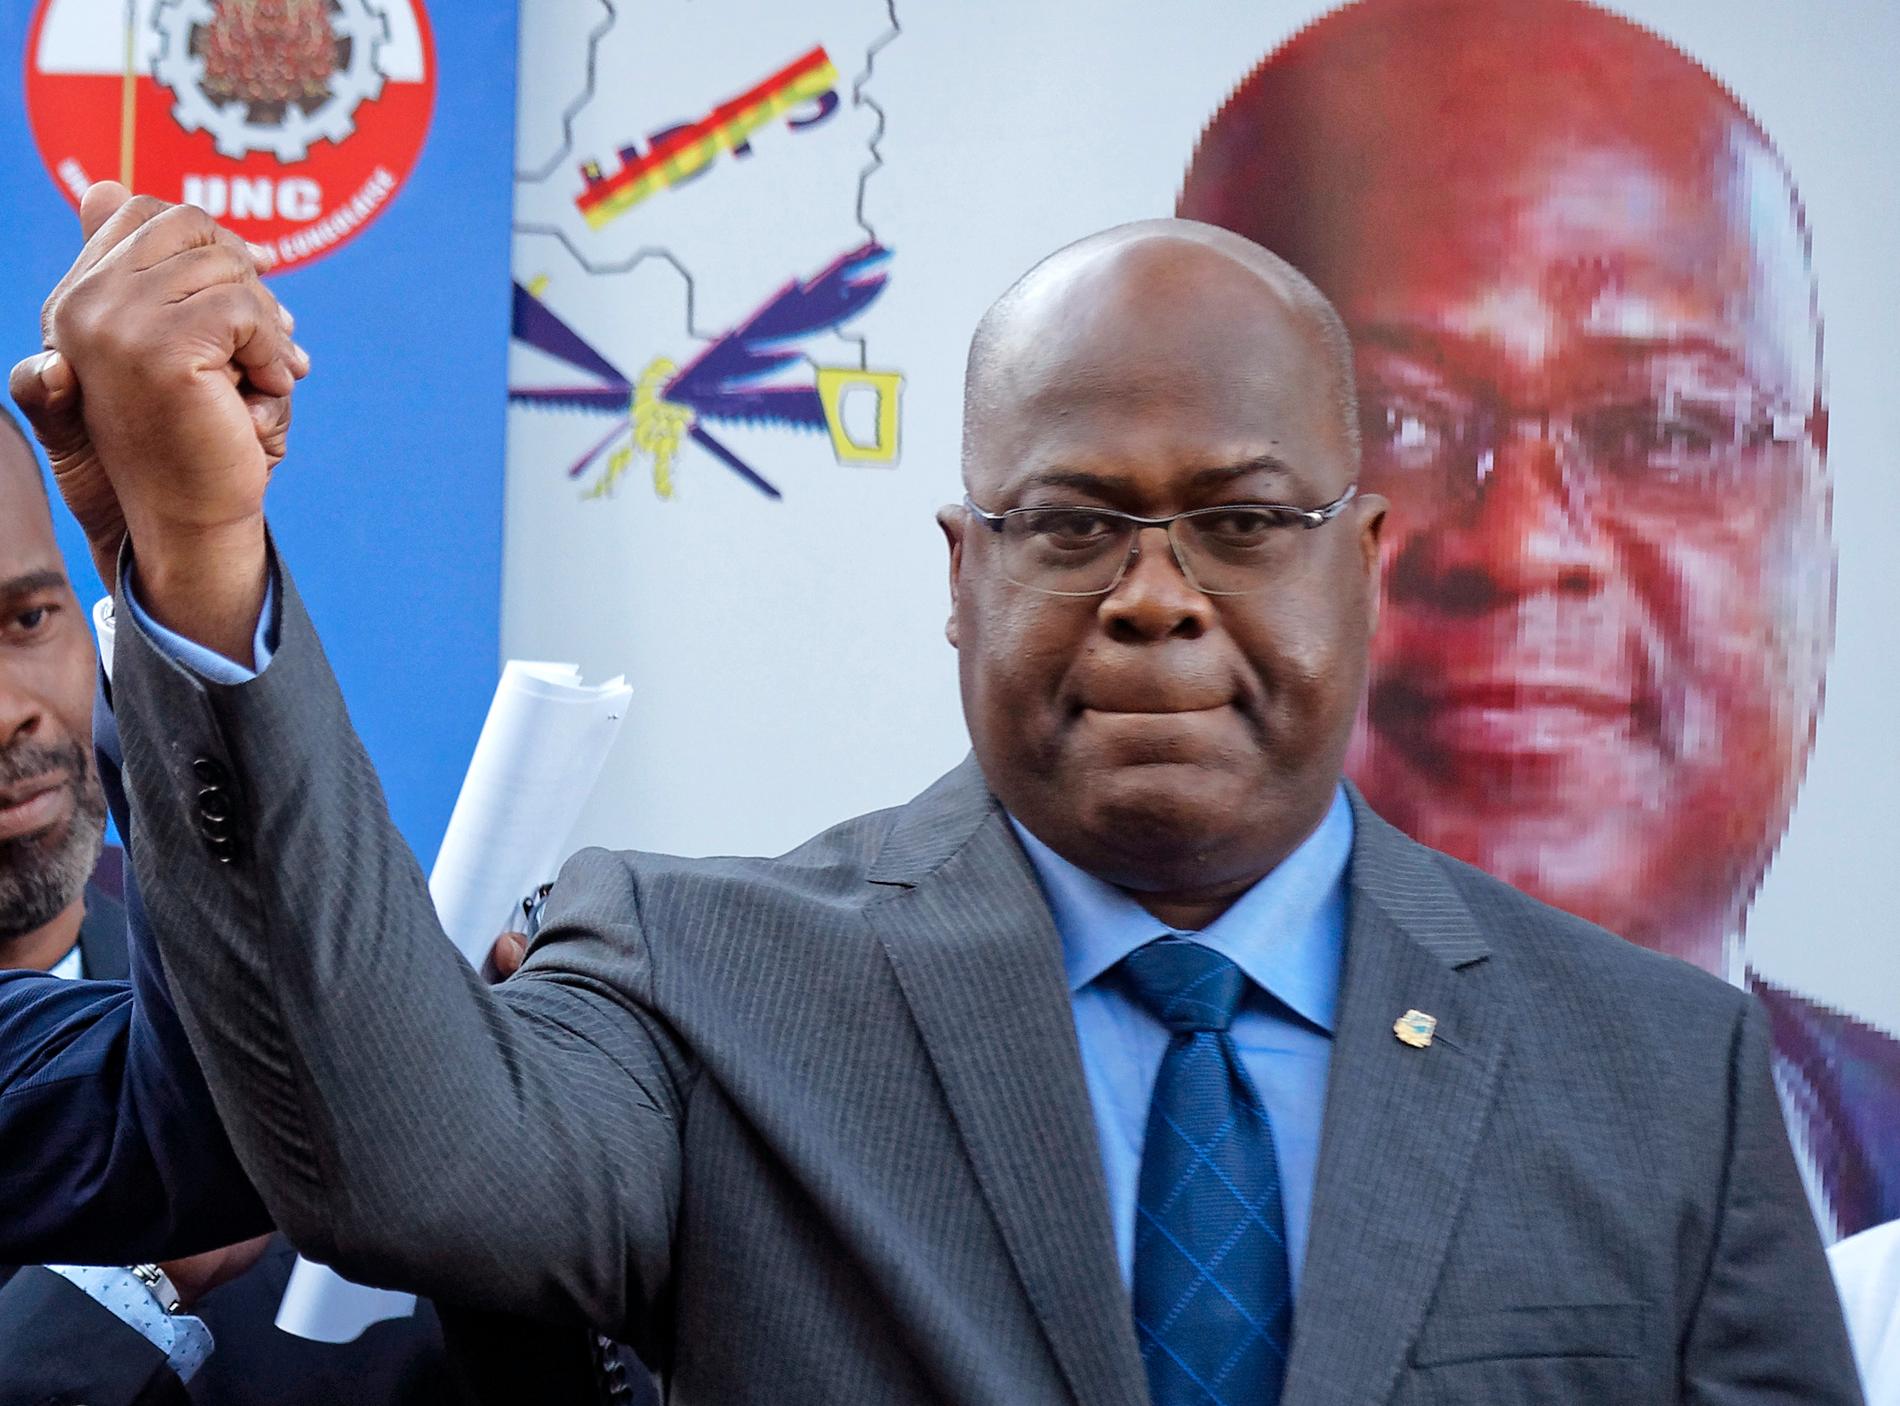 Félix Tshisekedi är Kongo-Kinshasas nye president enligt landets valkommission. Det anser även författningsdomstolen. Bilden är från valkampanjen i november.